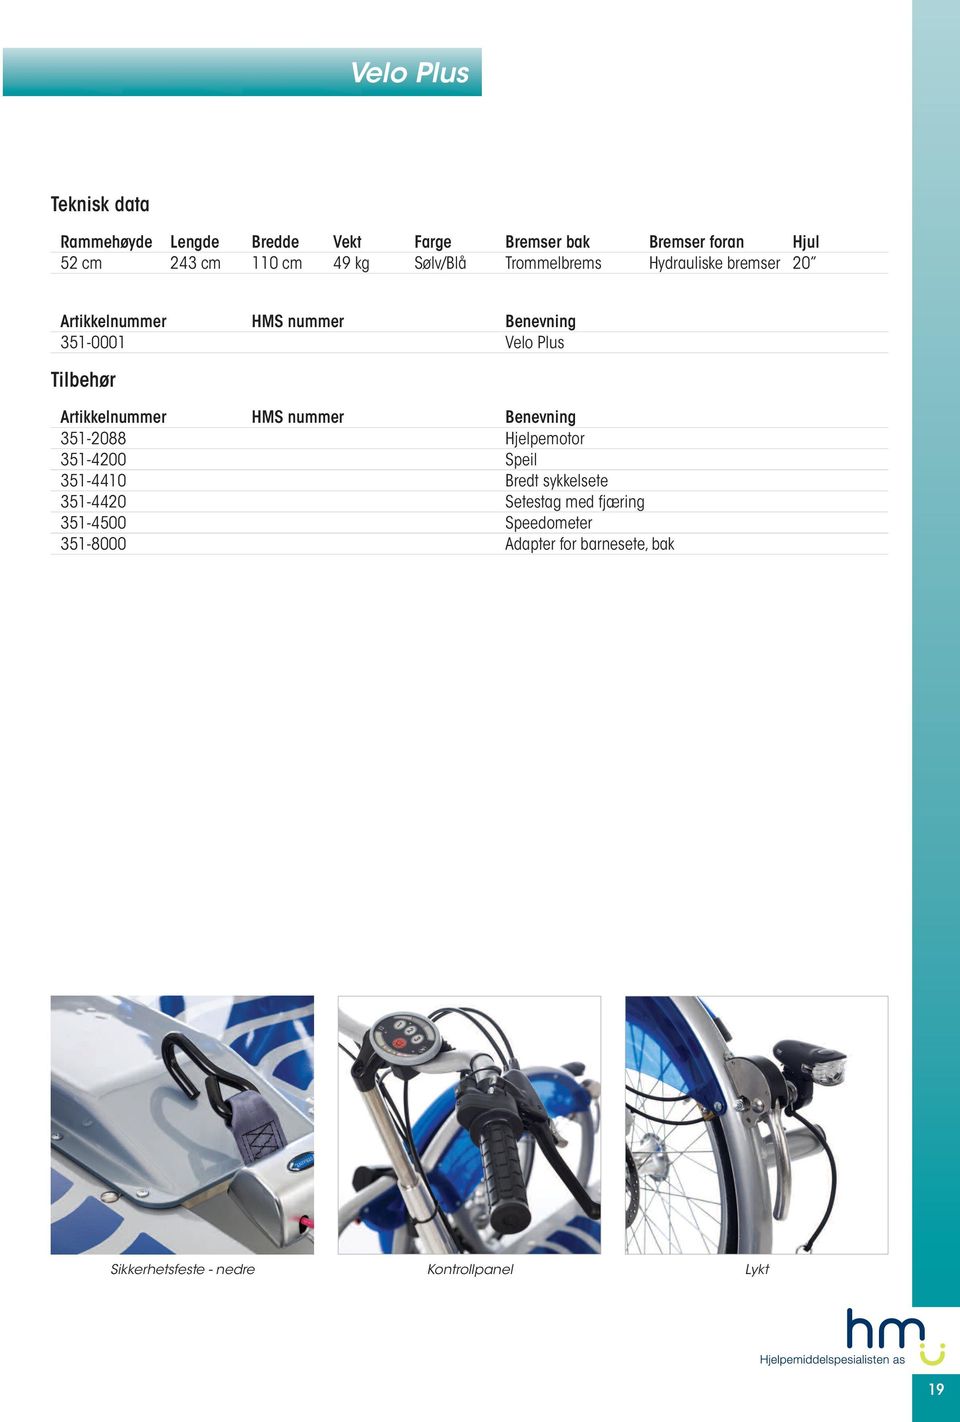 351-2088 Hjelpemotor 351-4200 Speil 351-4410 Bredt sykkelsete 351-4420 Setestag med fjæring